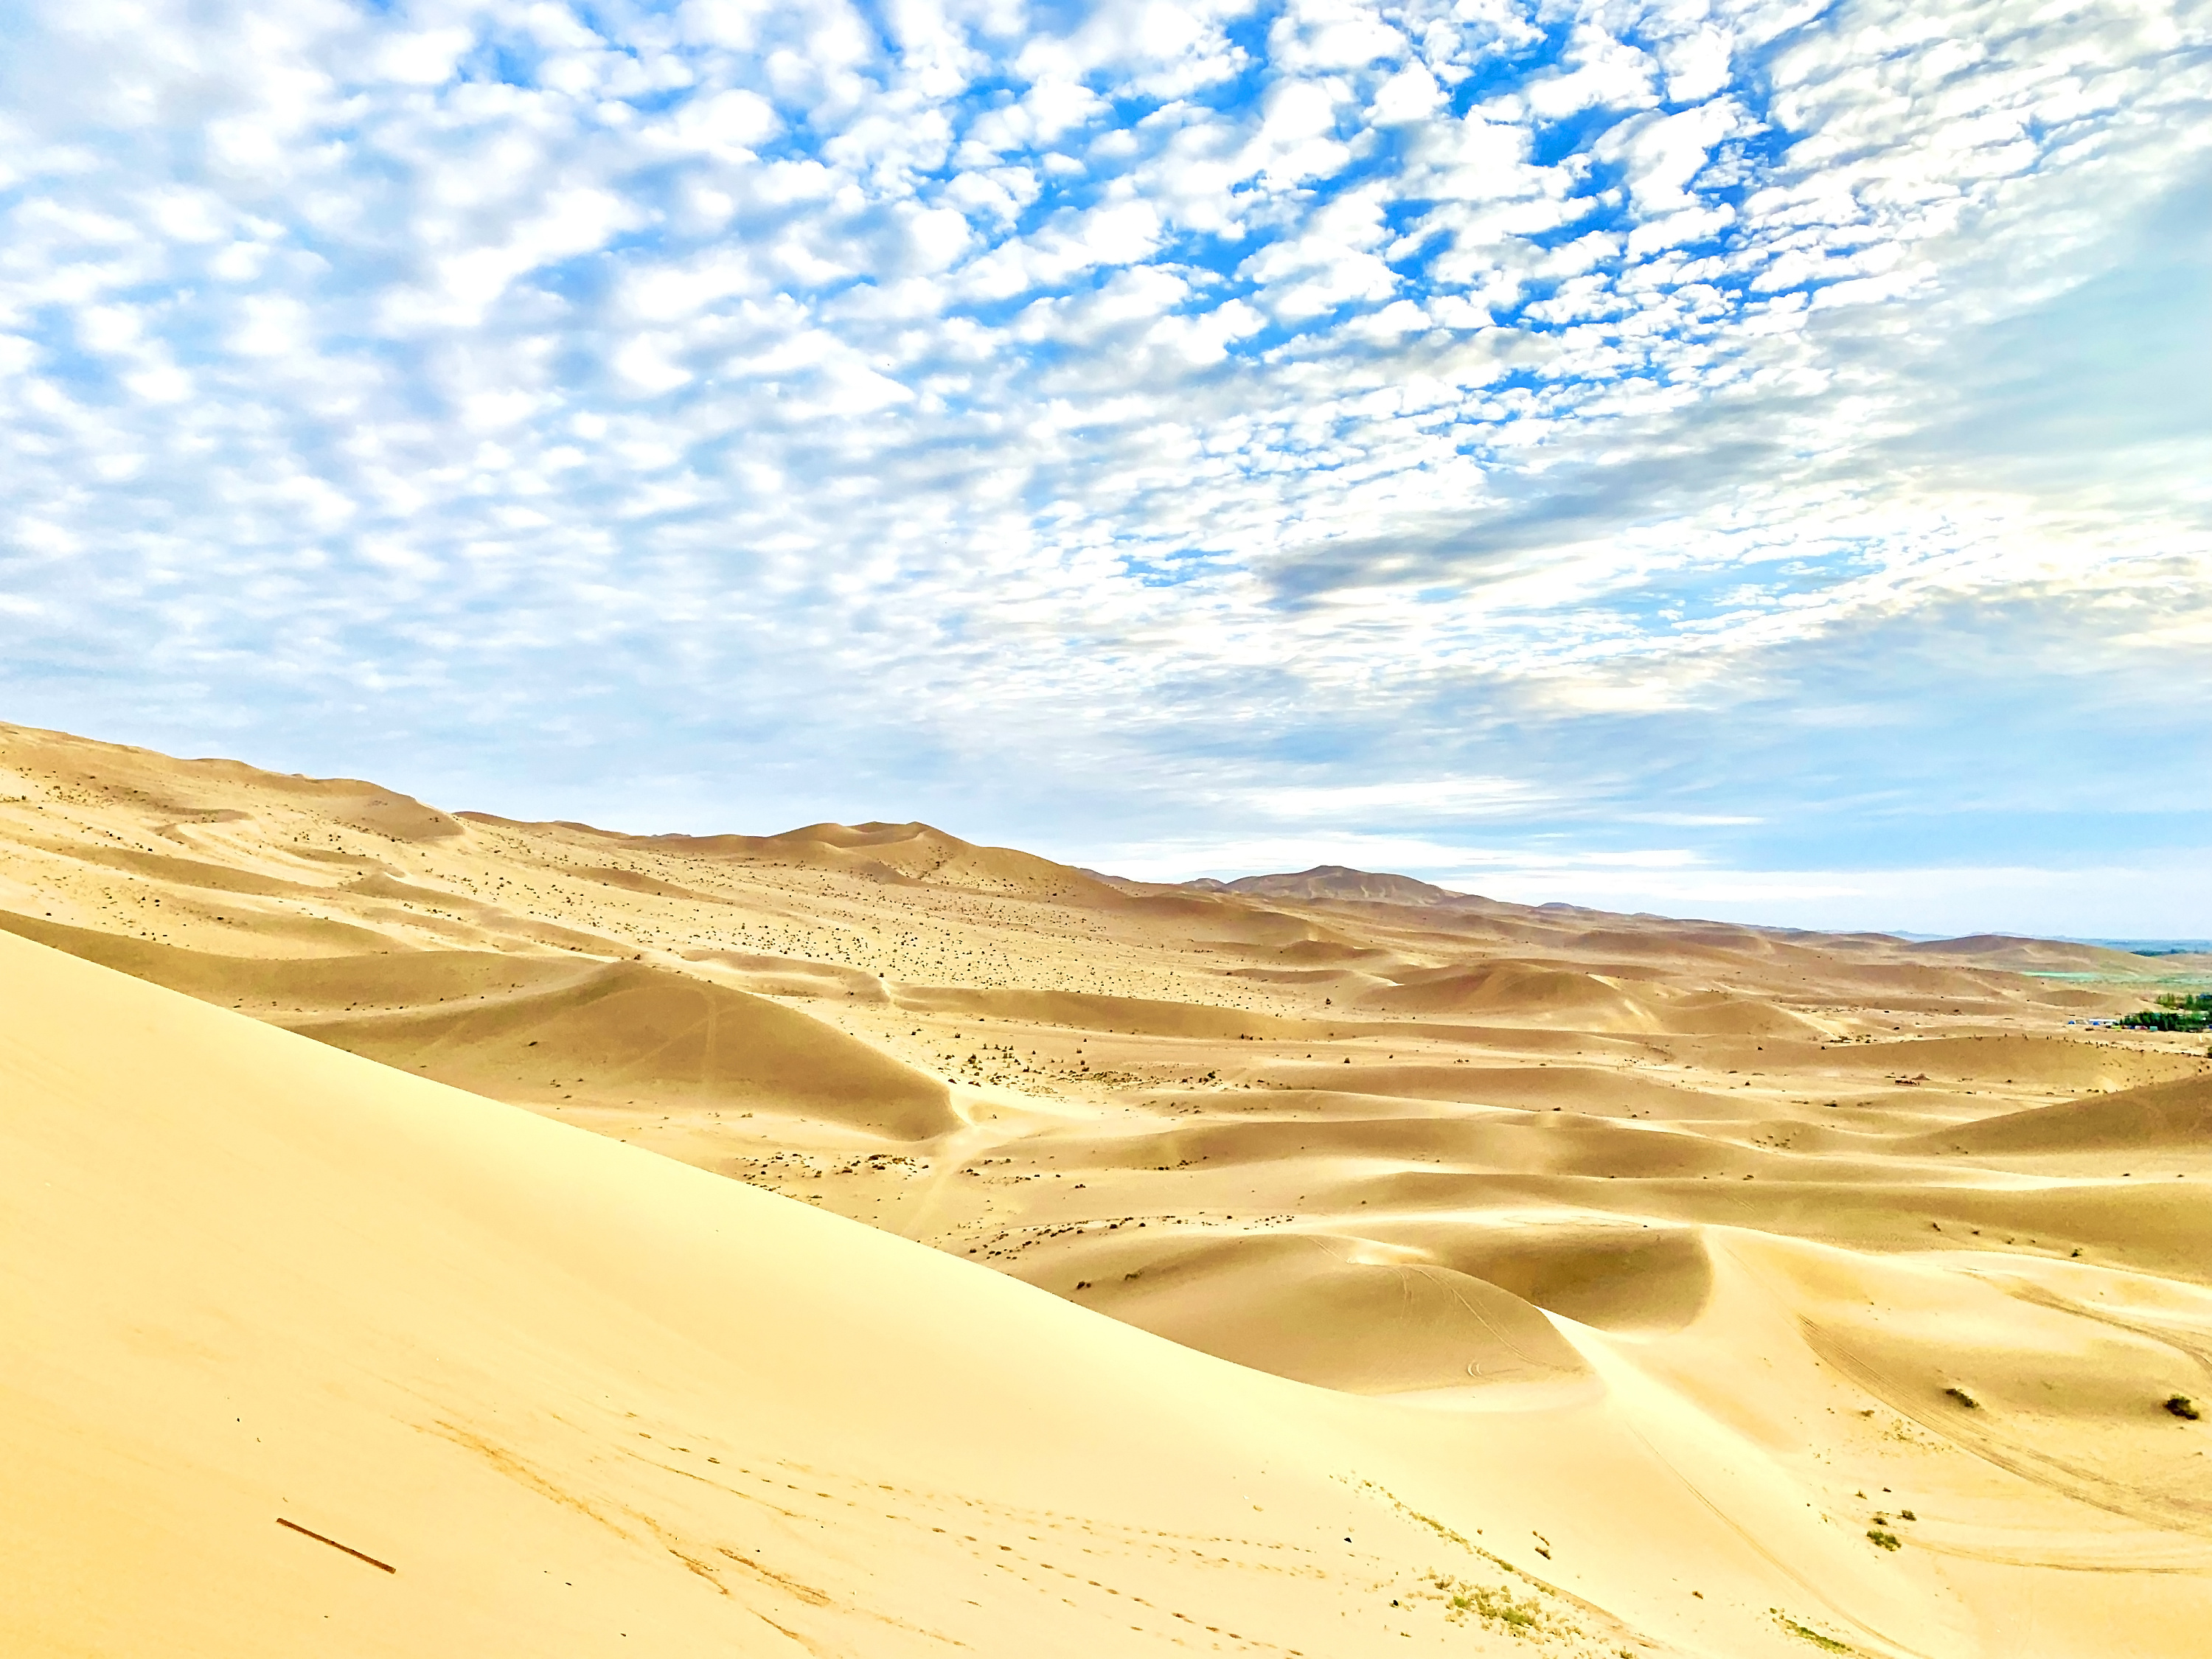 世界第四大沙漠内蒙古巴丹吉林沙漠灵幻之美 - 图库 - 市场报网络版时事经济观察